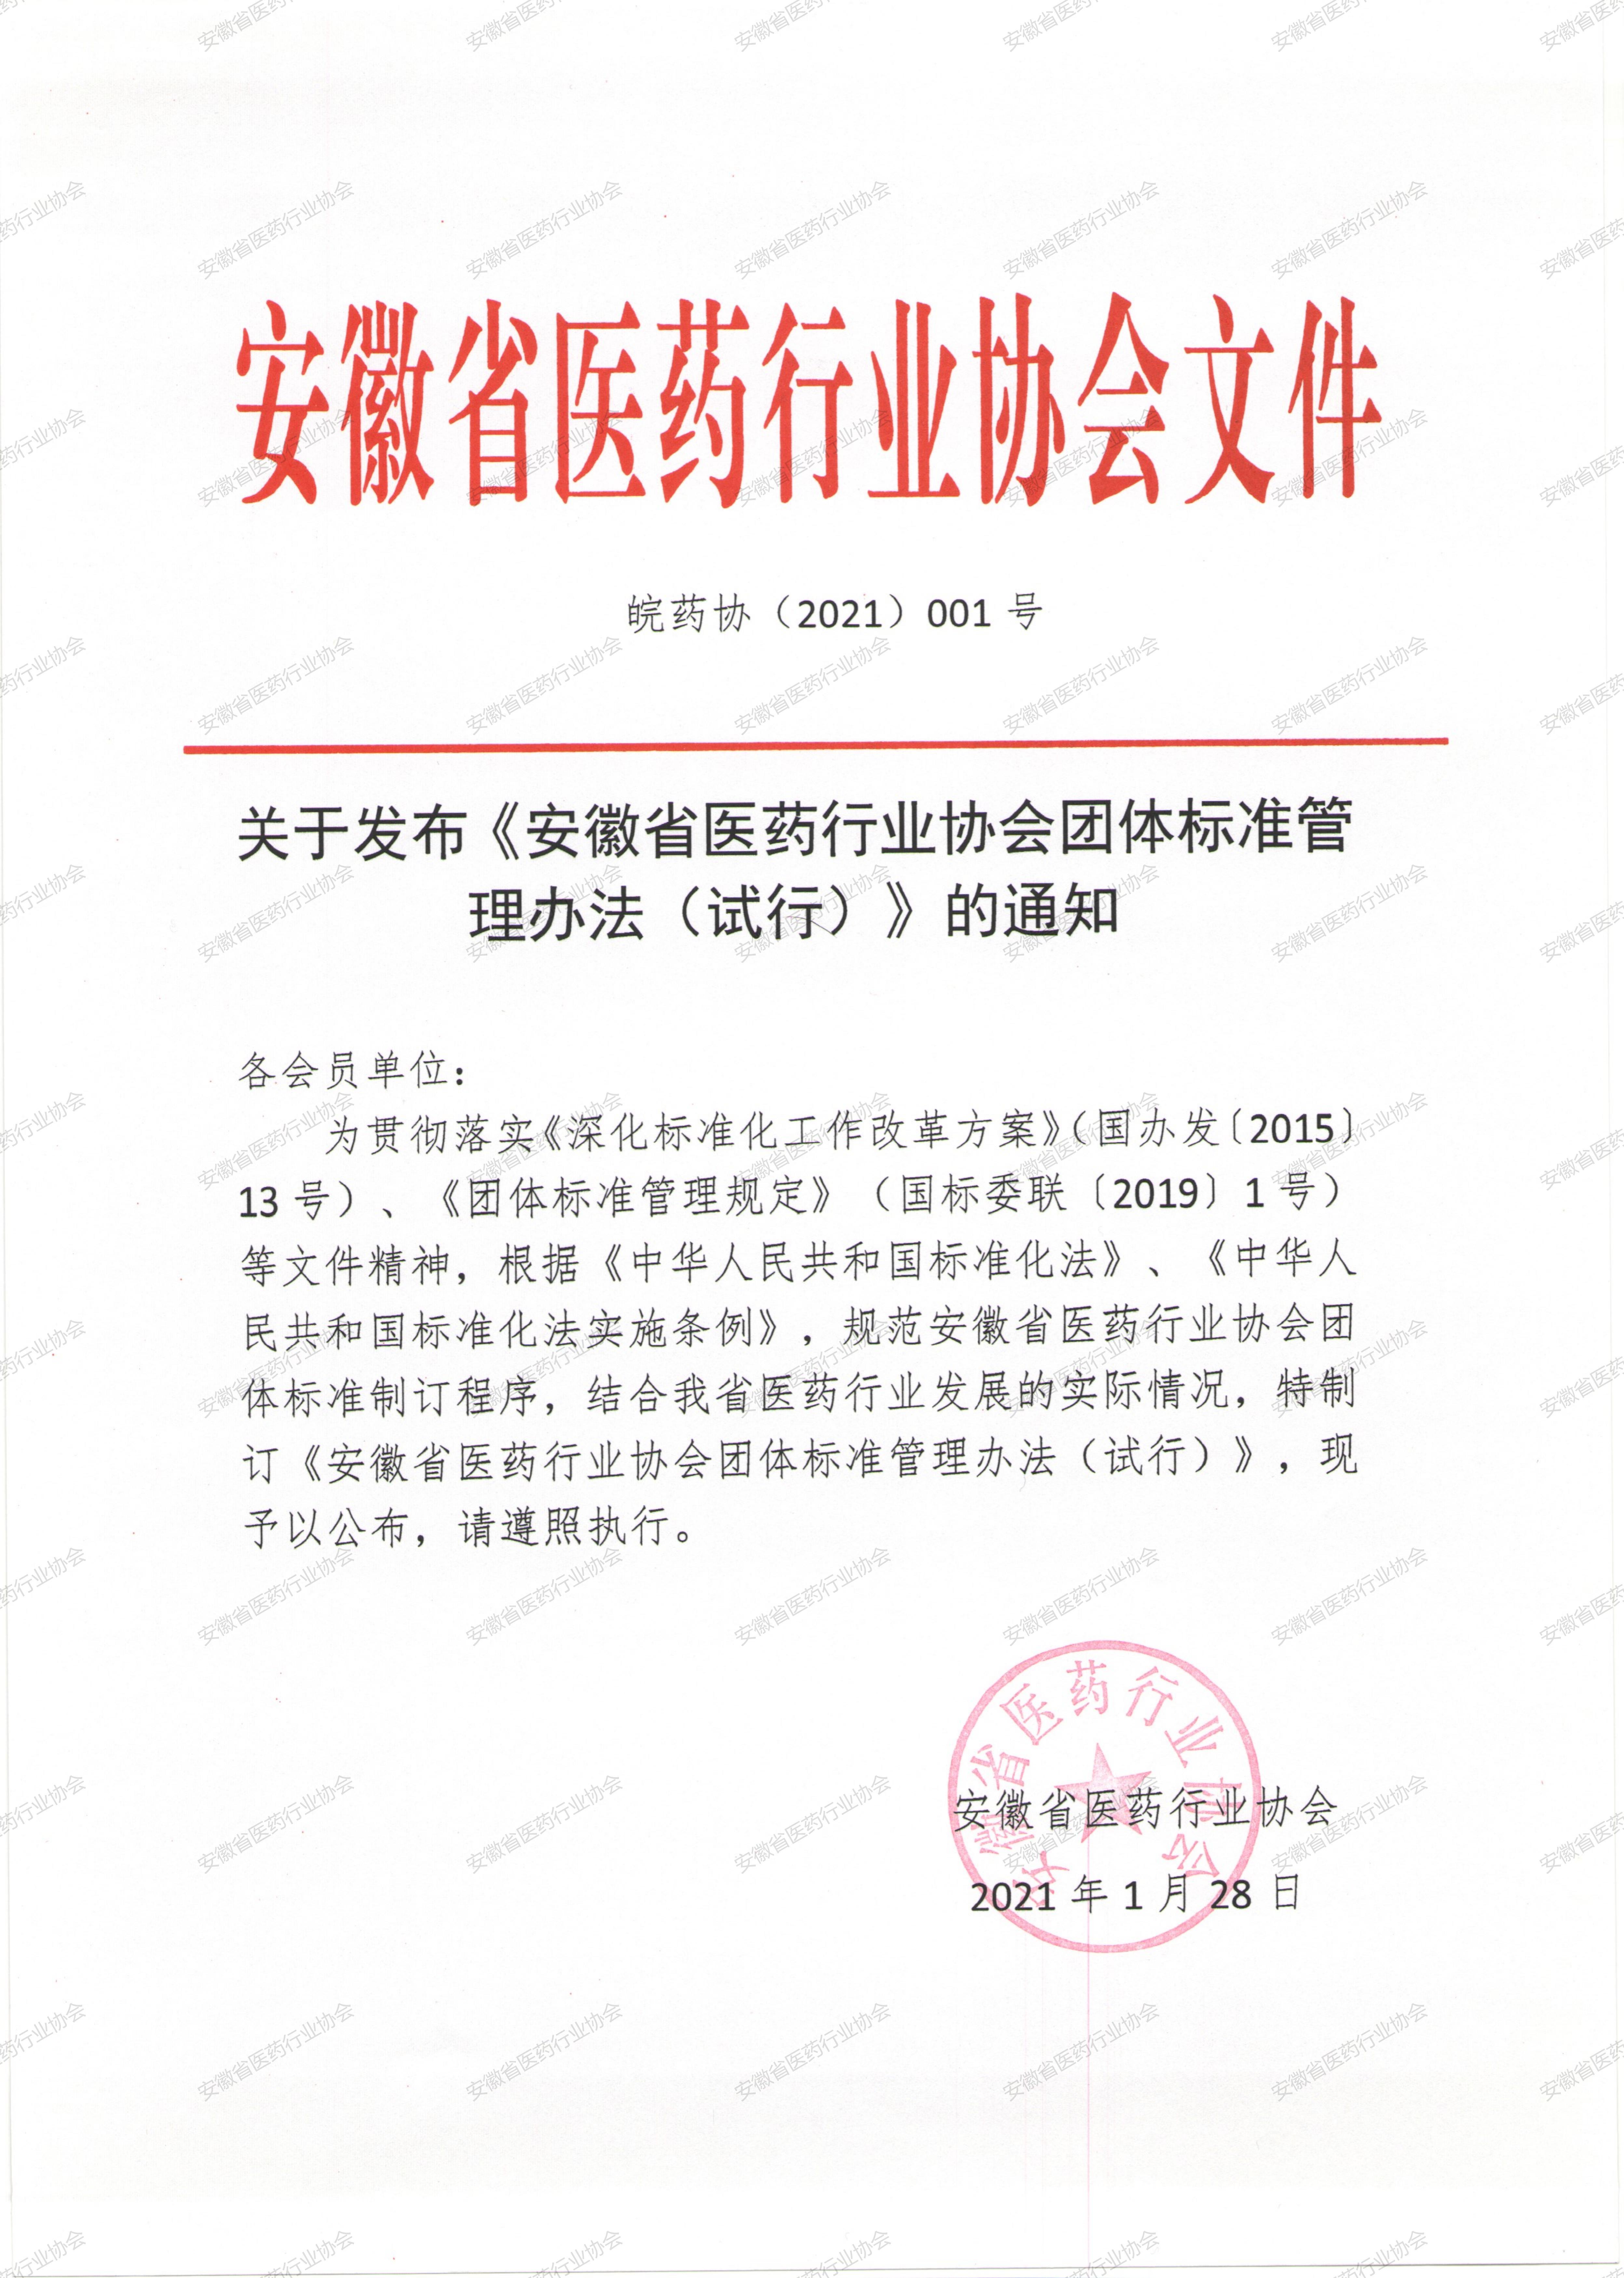 关于发布《安徽省医药行业协会团体标准管理办法（试行）》的通知.jpg